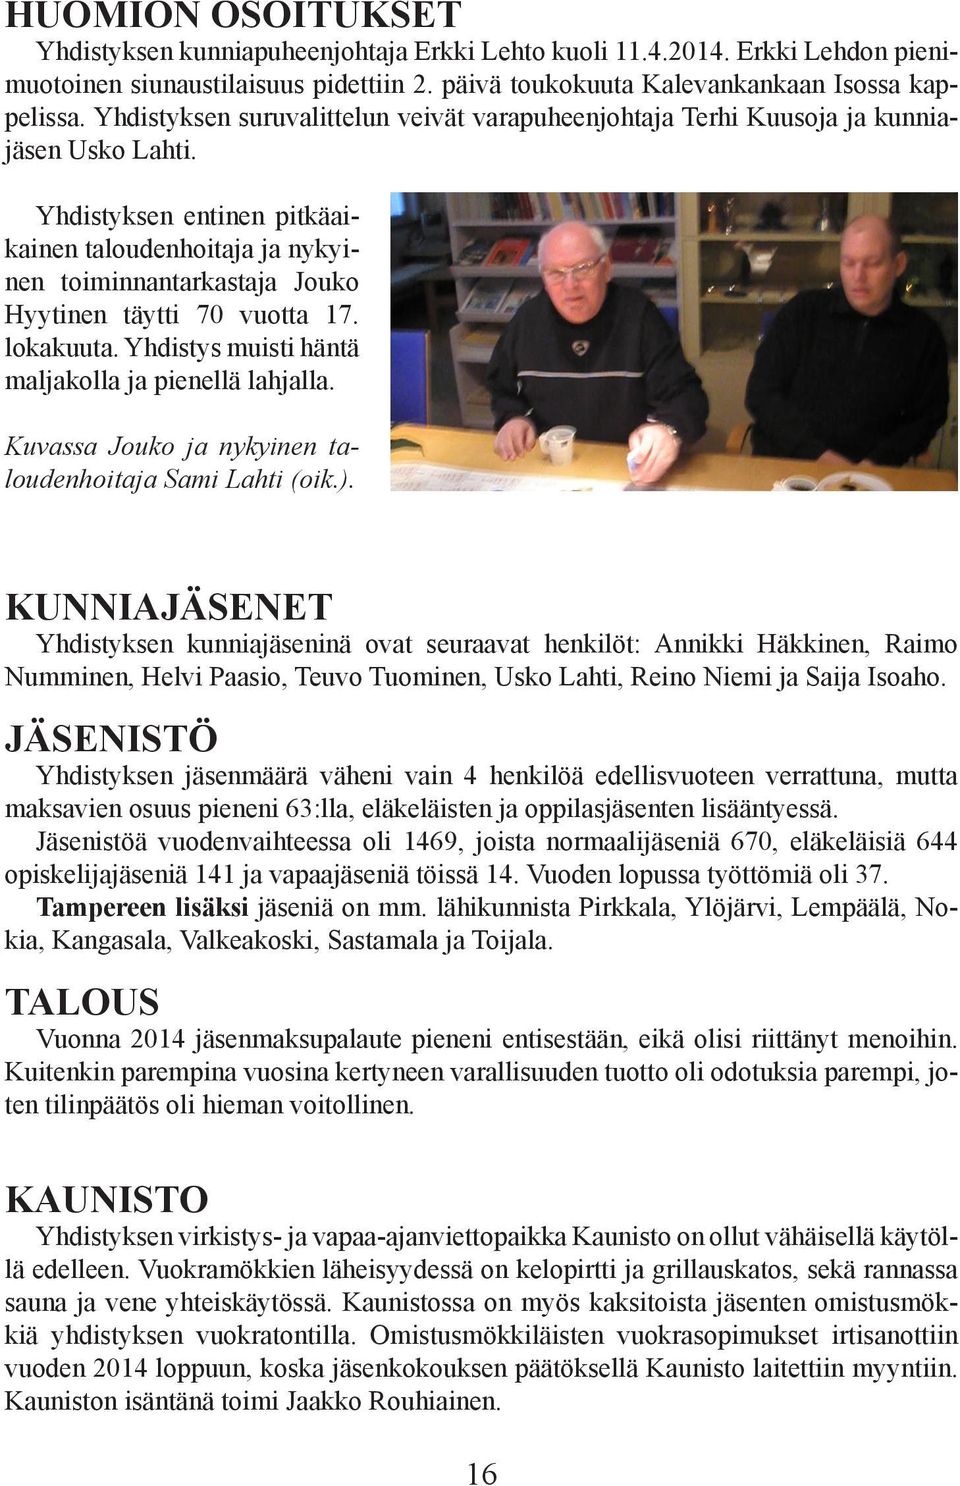 Yhdistyksen entinen pitkäaikainen taloudenhoitaja ja nykyinen toiminnantarkastaja Jouko Hyytinen täytti 70 vuotta 17. lokakuuta. Yhdistys muisti häntä maljakolla ja pienellä lahjalla.